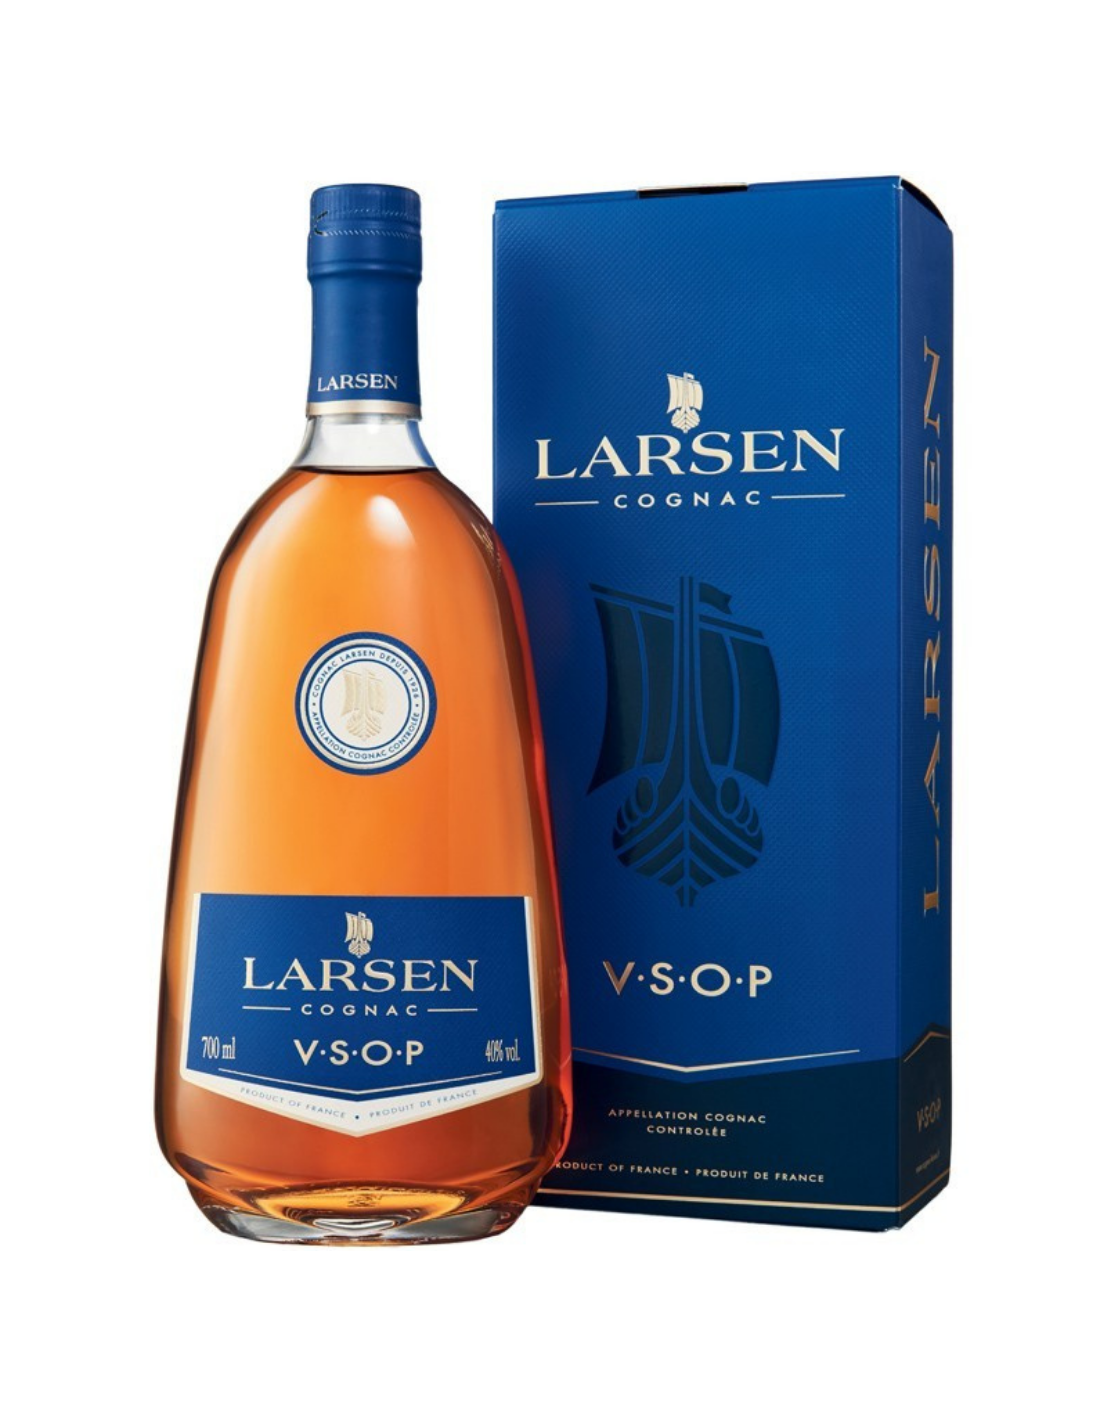 Coniac Larsen VSOP, 40% alc., 1L, Franta alcooldiscount.ro